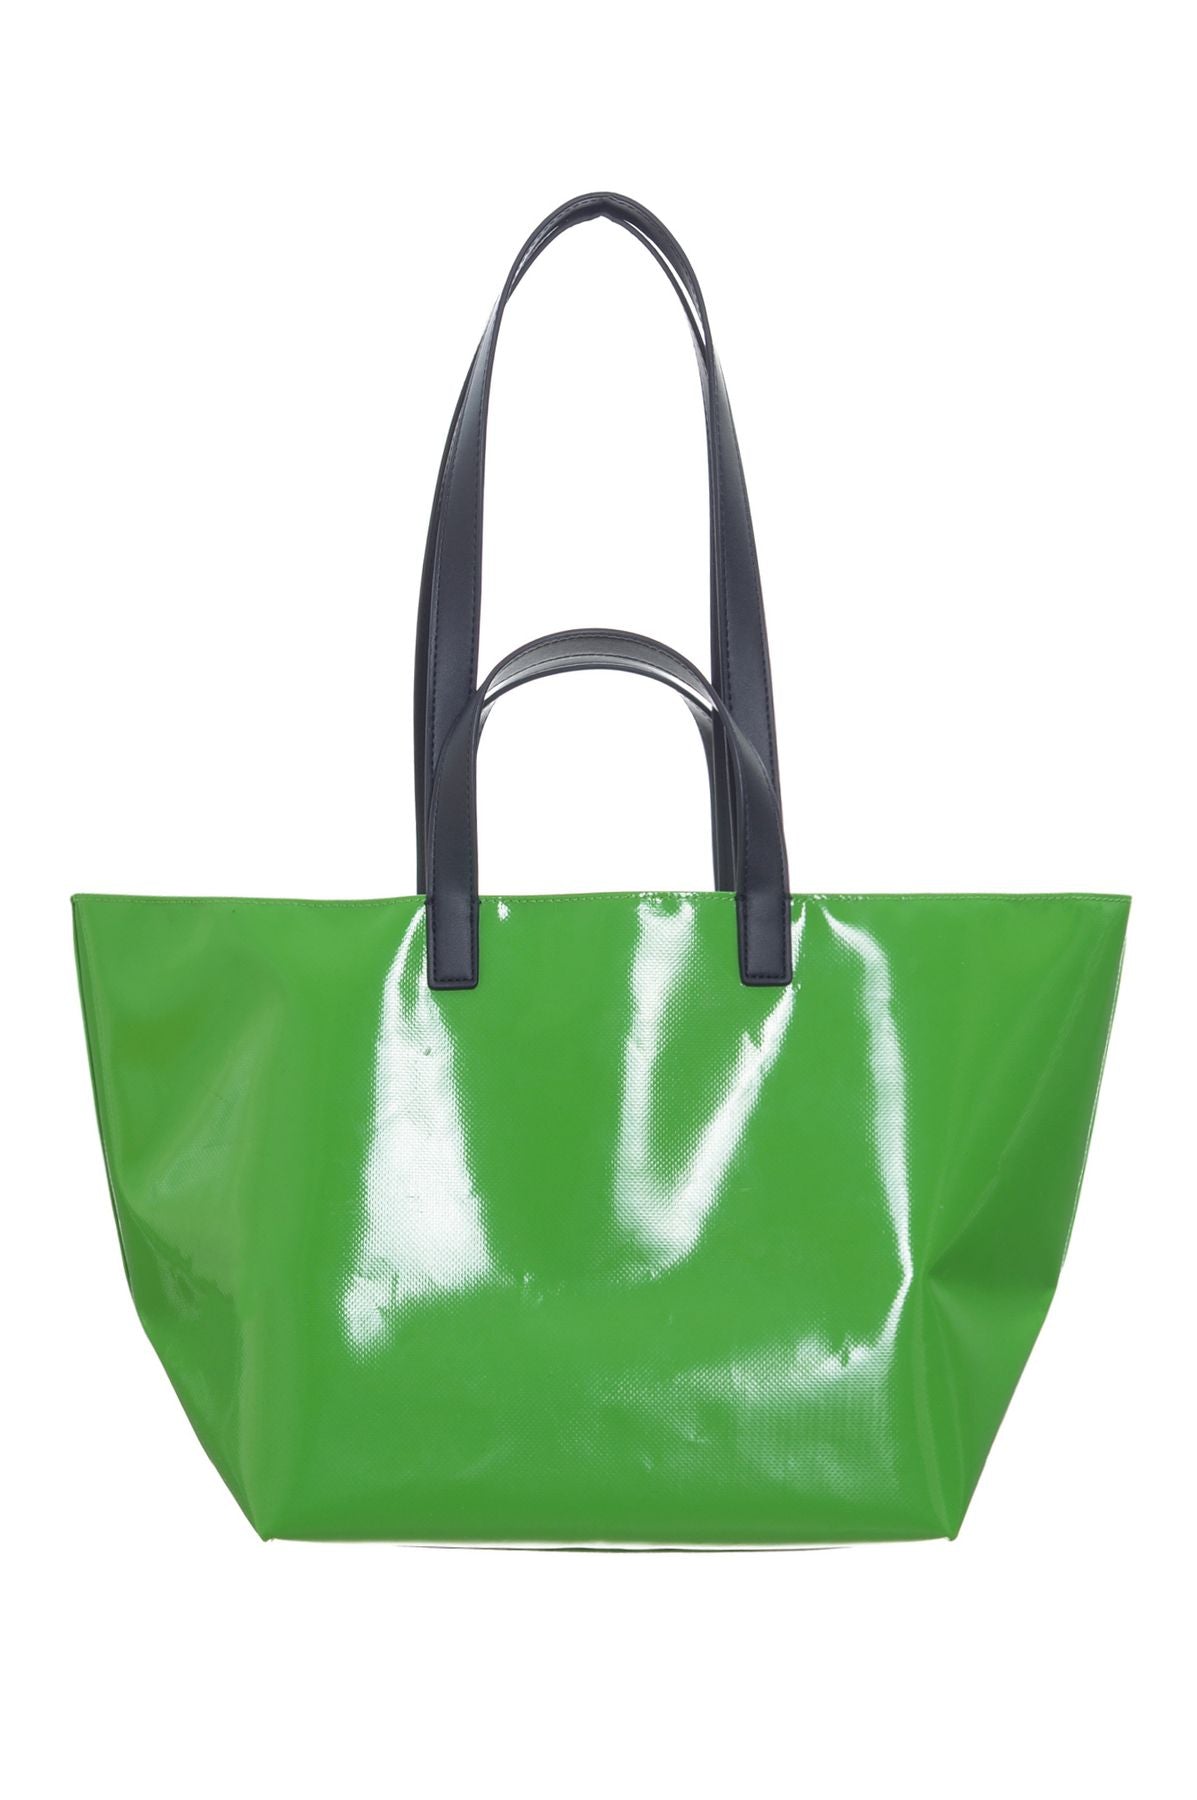 SUNDEK Spring/Summer PVC Bags